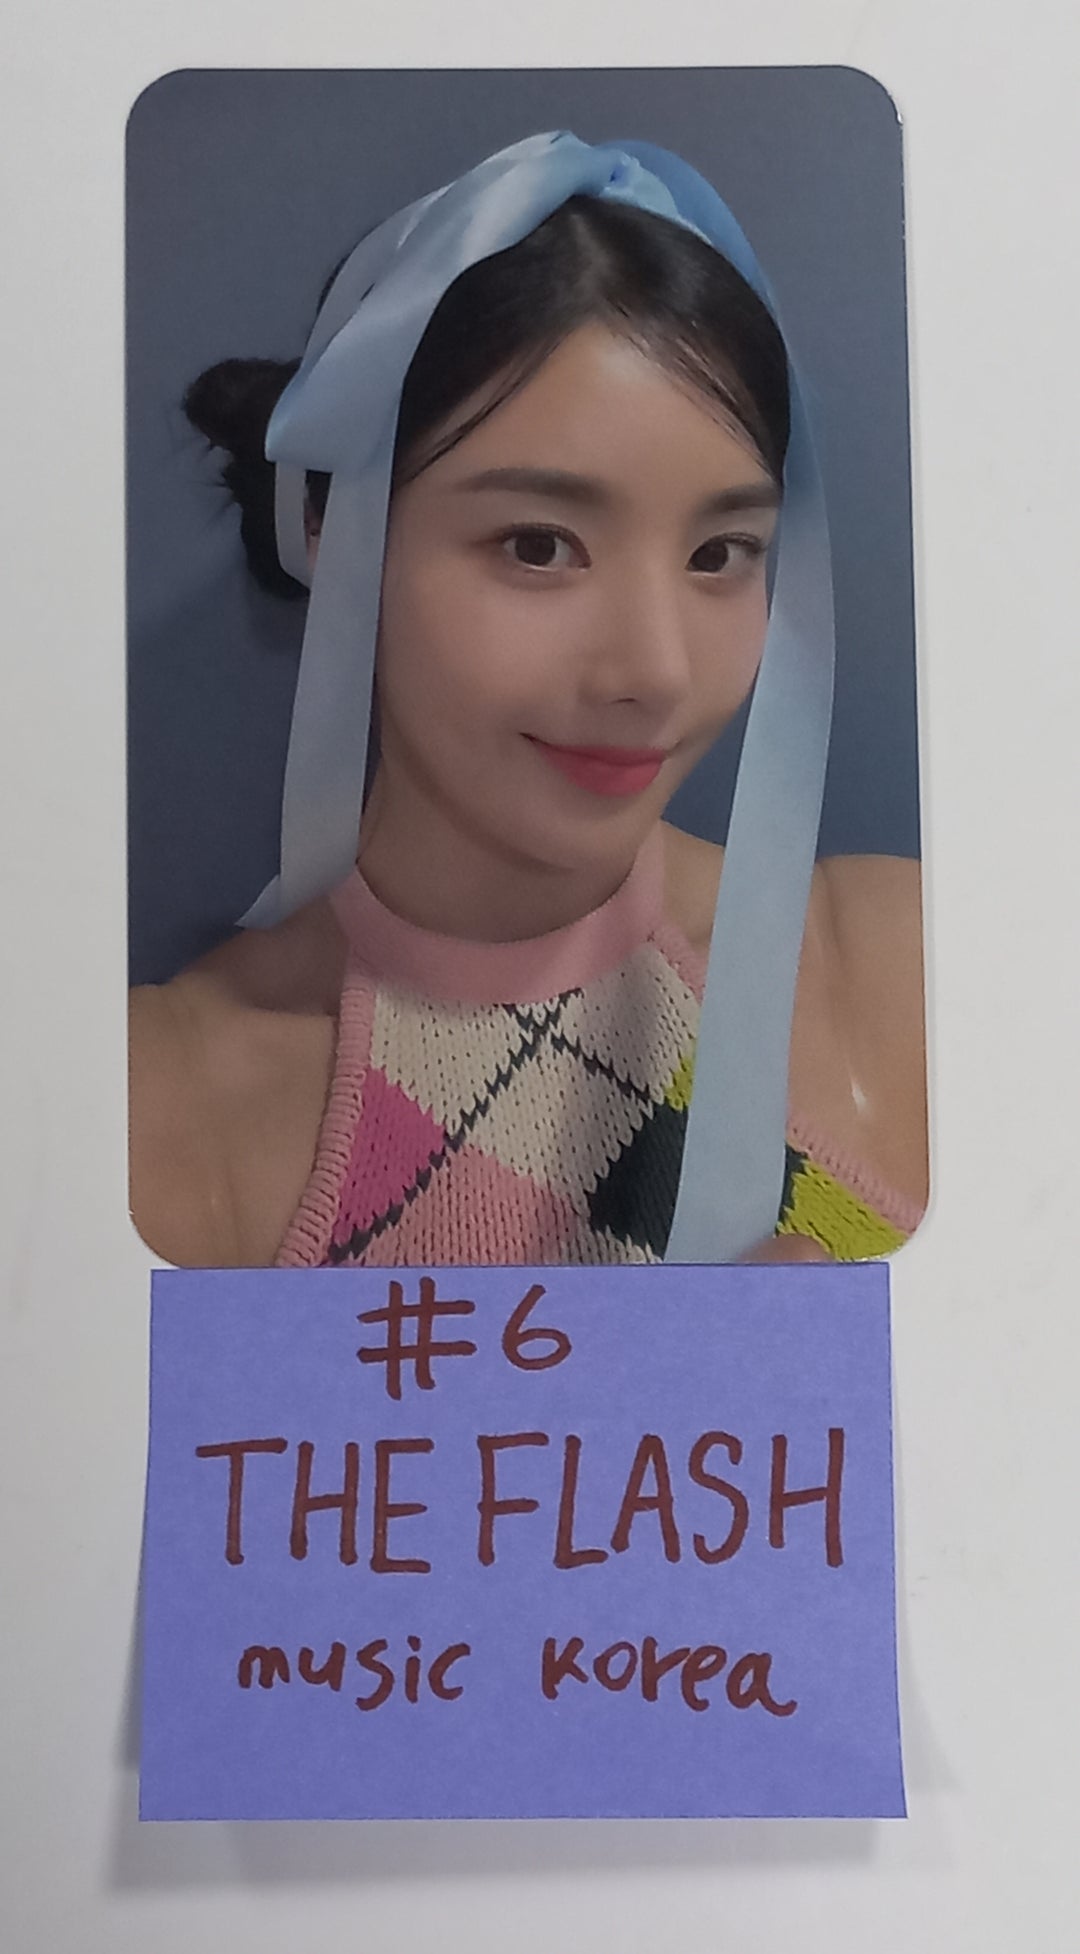 クォン・ウンビ 1st シングル「The Flash」 - Music Korea ファンサインイベント フォトカード [23.08.24]